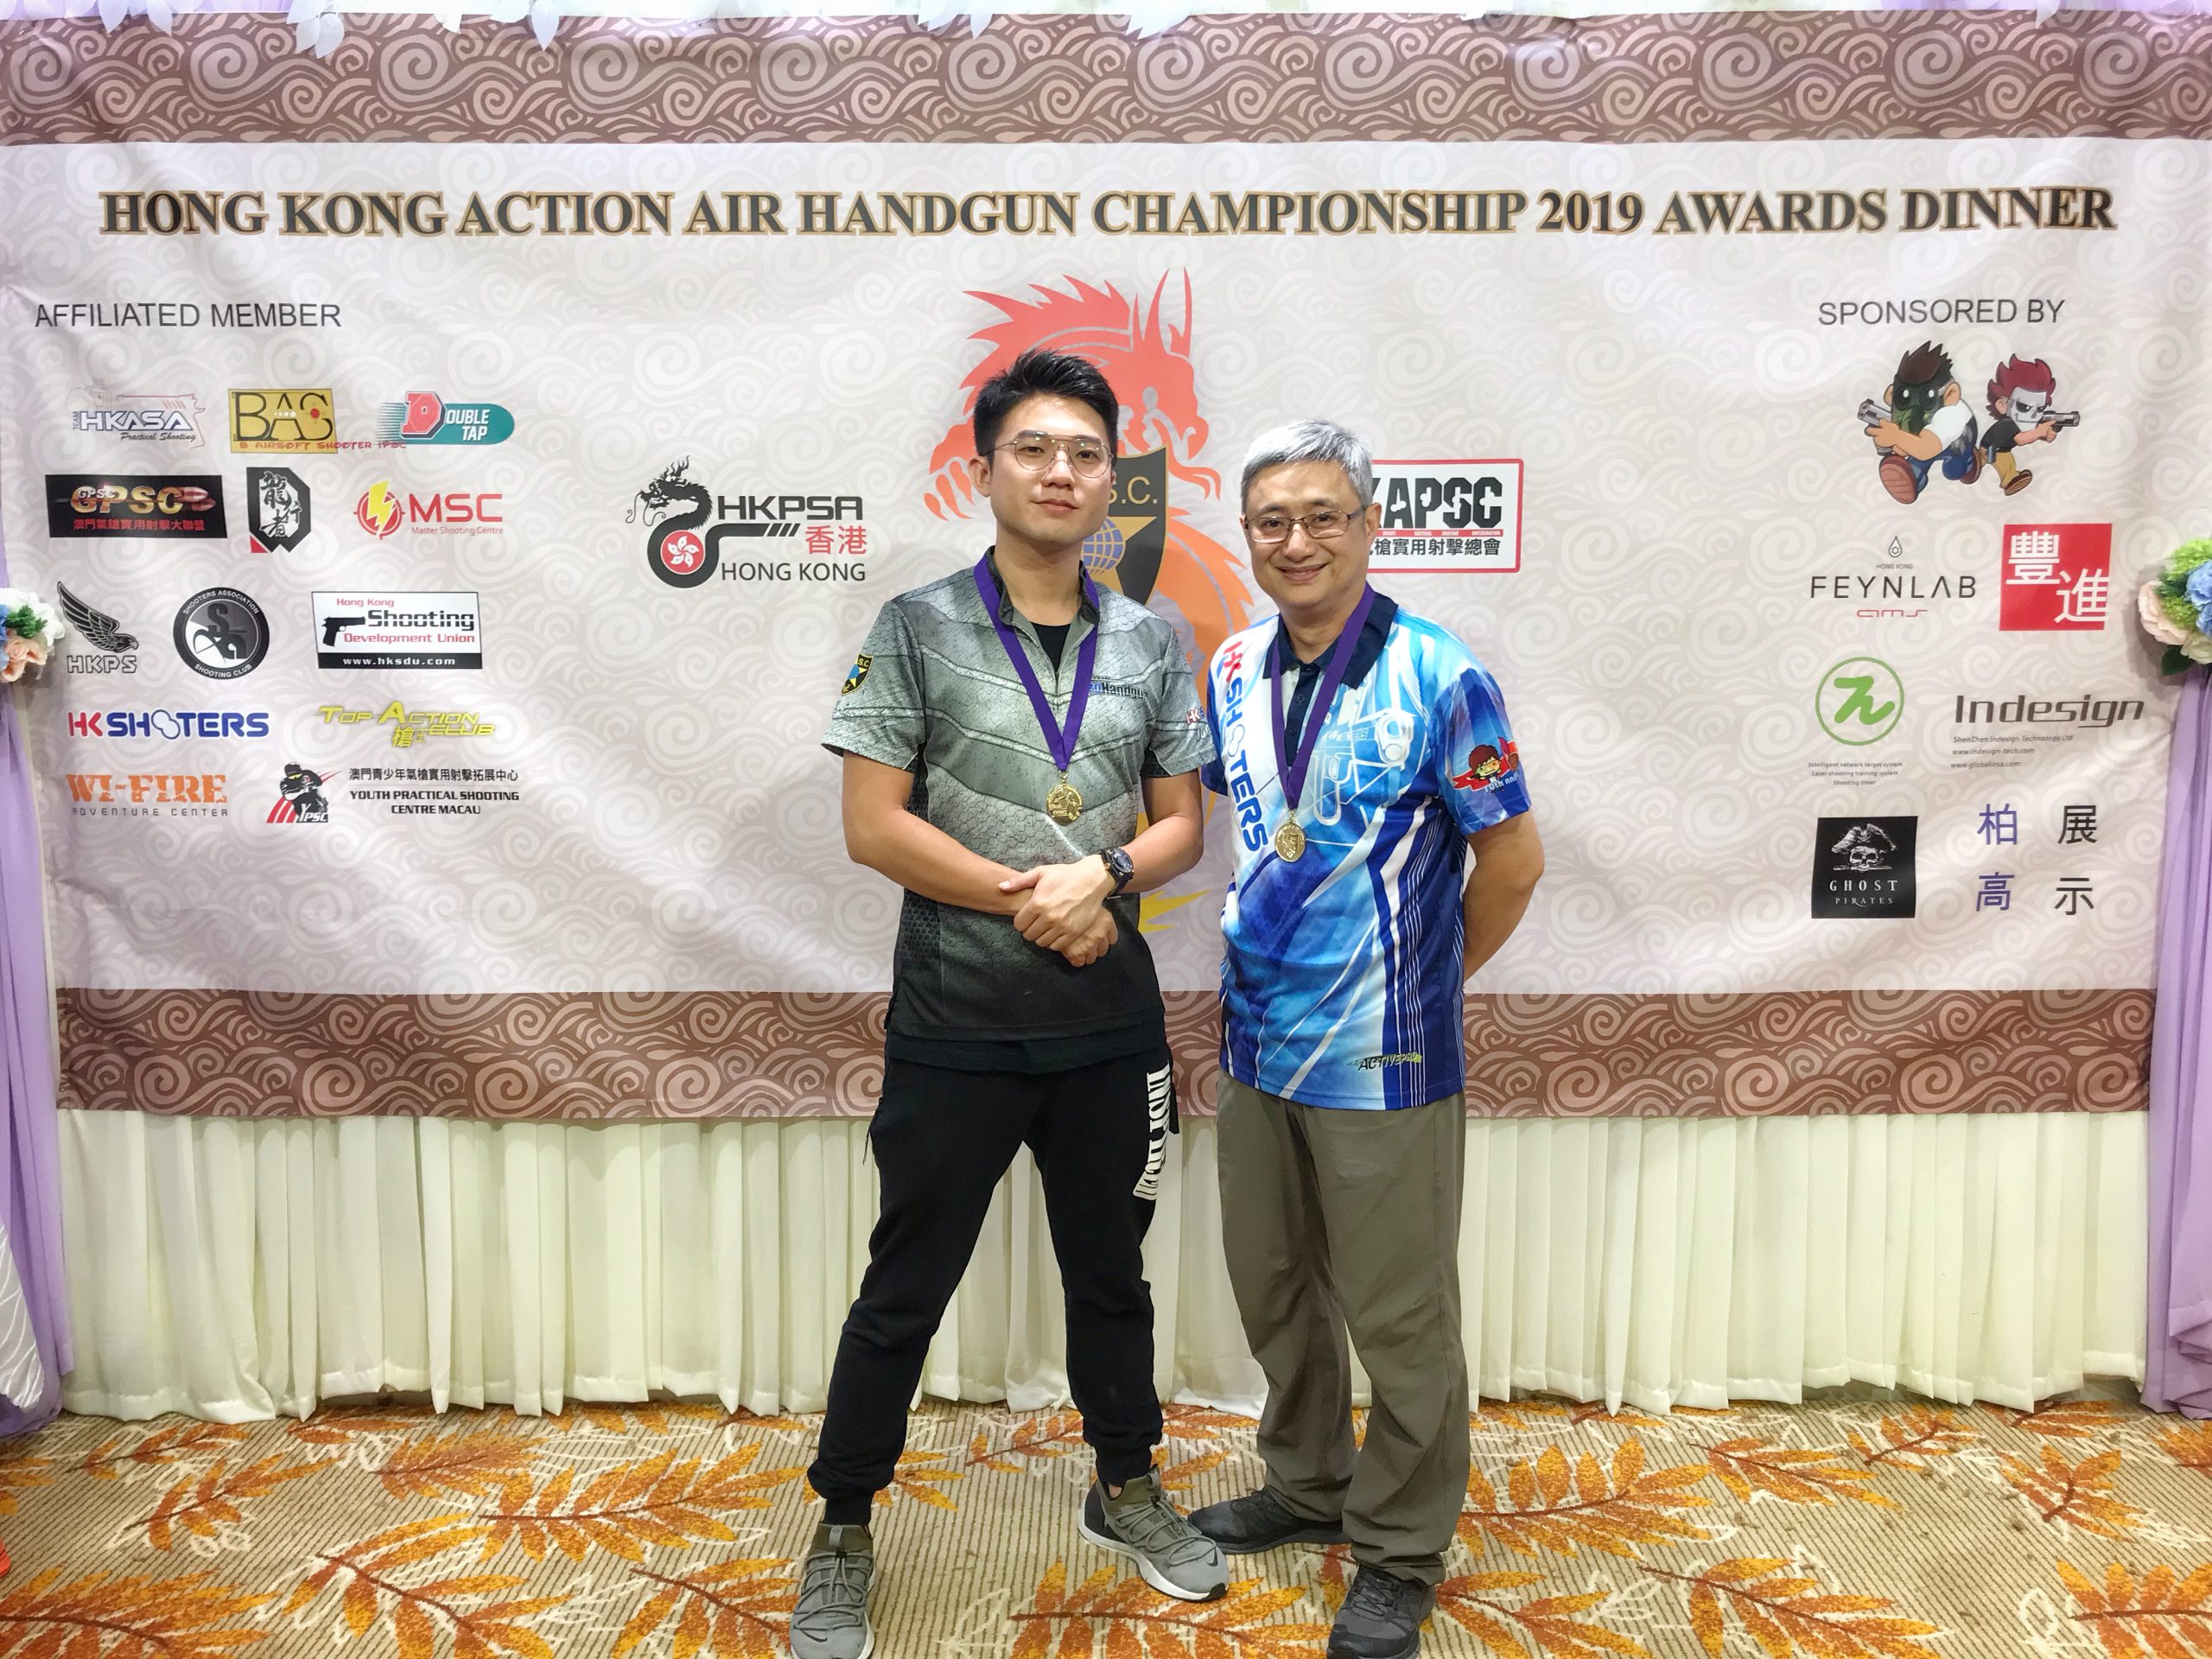 HKS @ Hong Kong Action Air Handgun Championship 2019